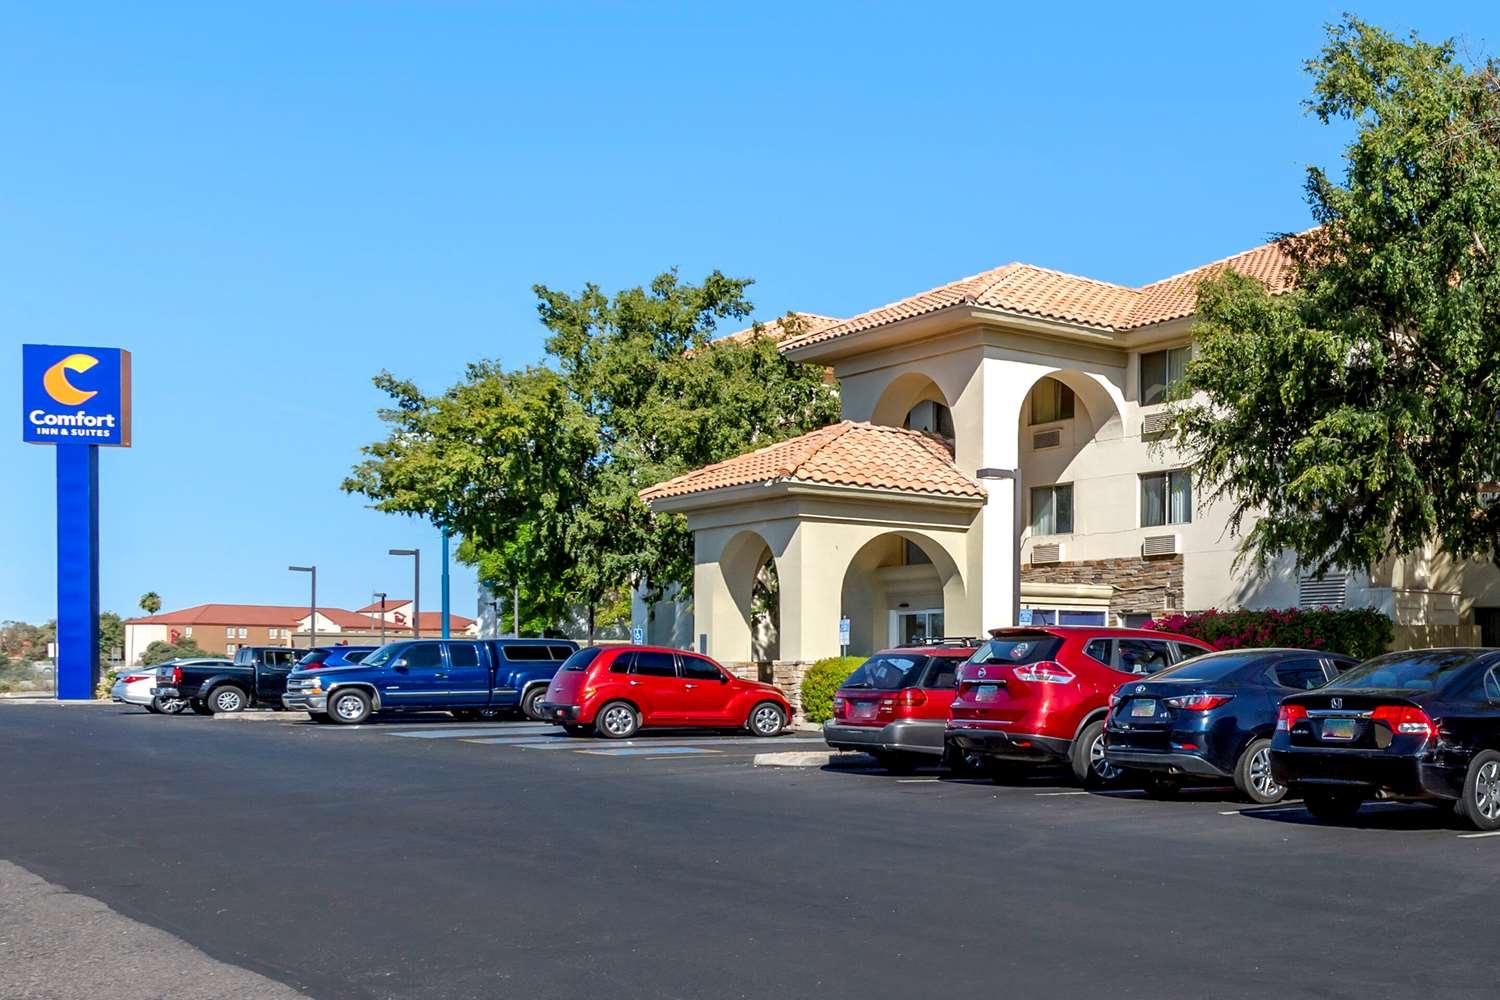 Comfort Inn and Suites Phoenix North - Deer Valley in Phoenix, AZ